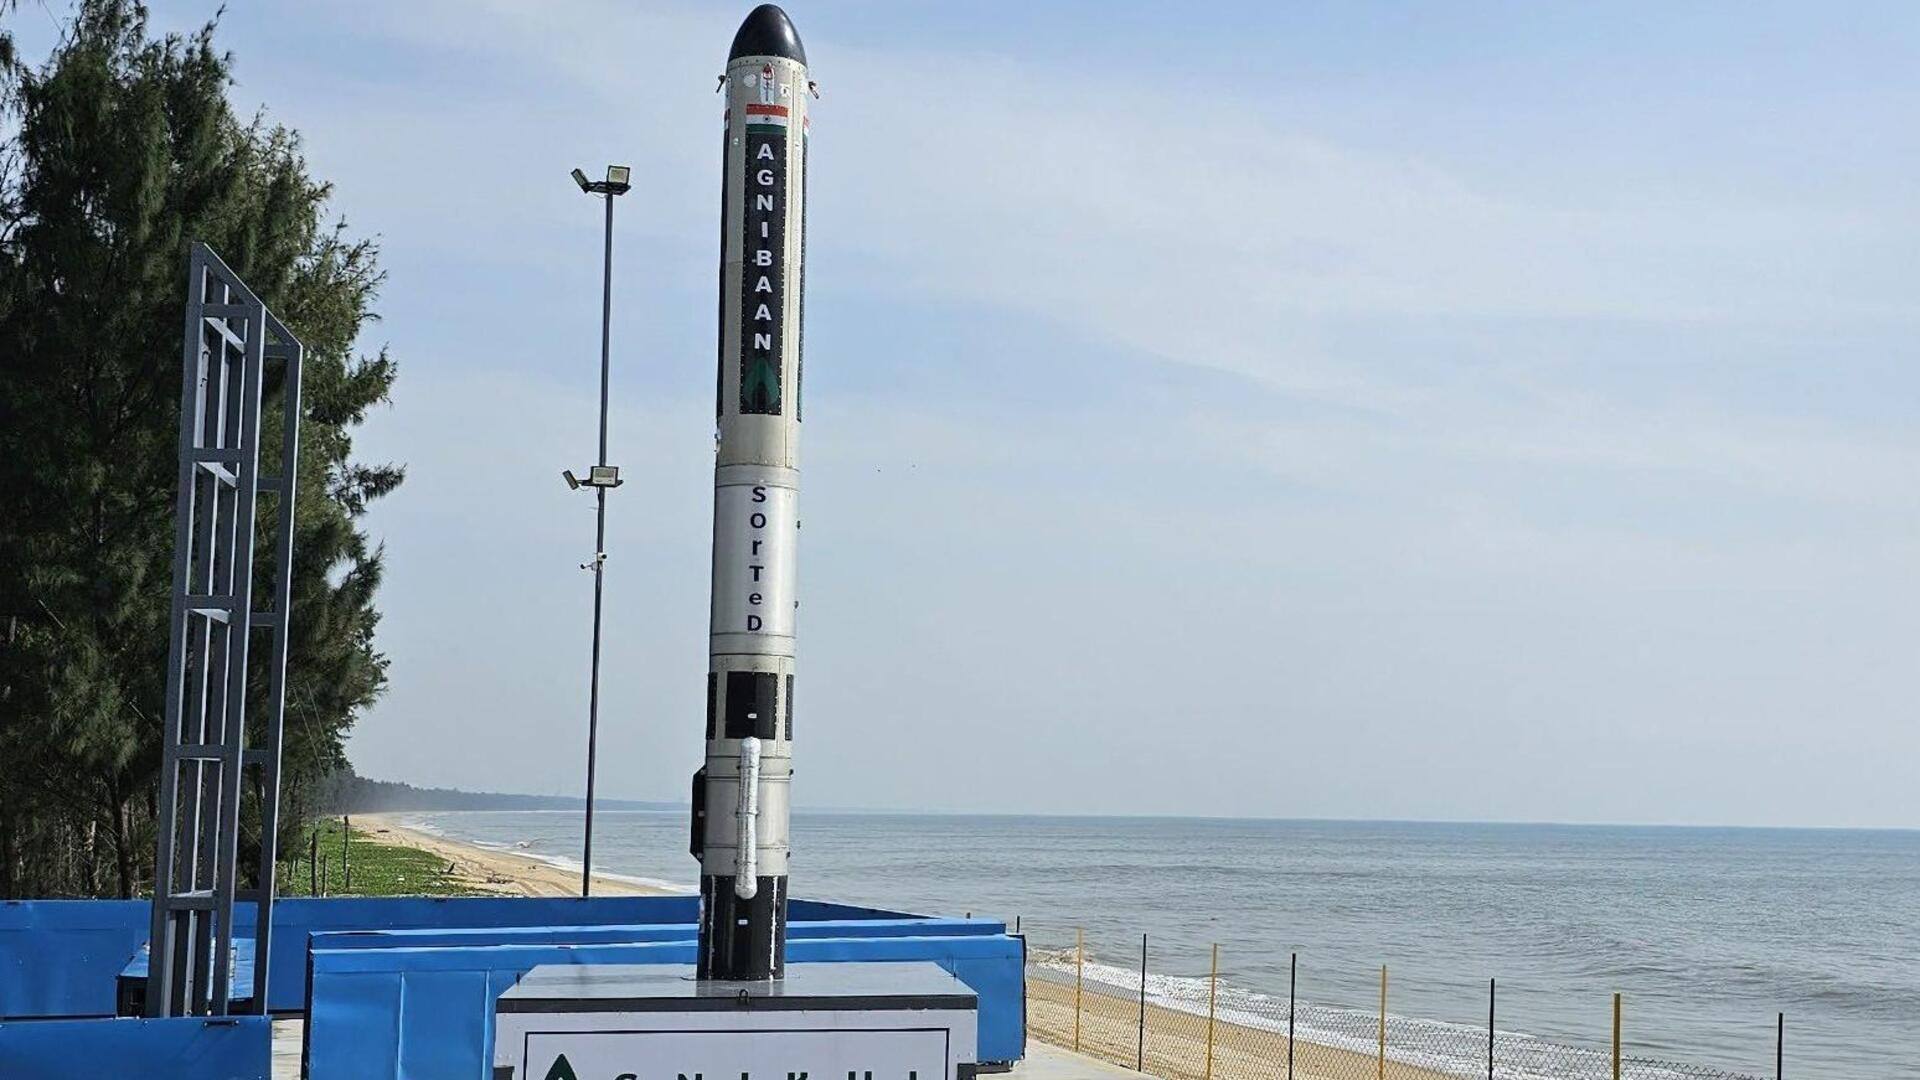 भारत के पहले सेमी-क्रायोजेनिक रॉकेट का लॉन्च दूसरी बार रद्द, वजह साफ नहीं